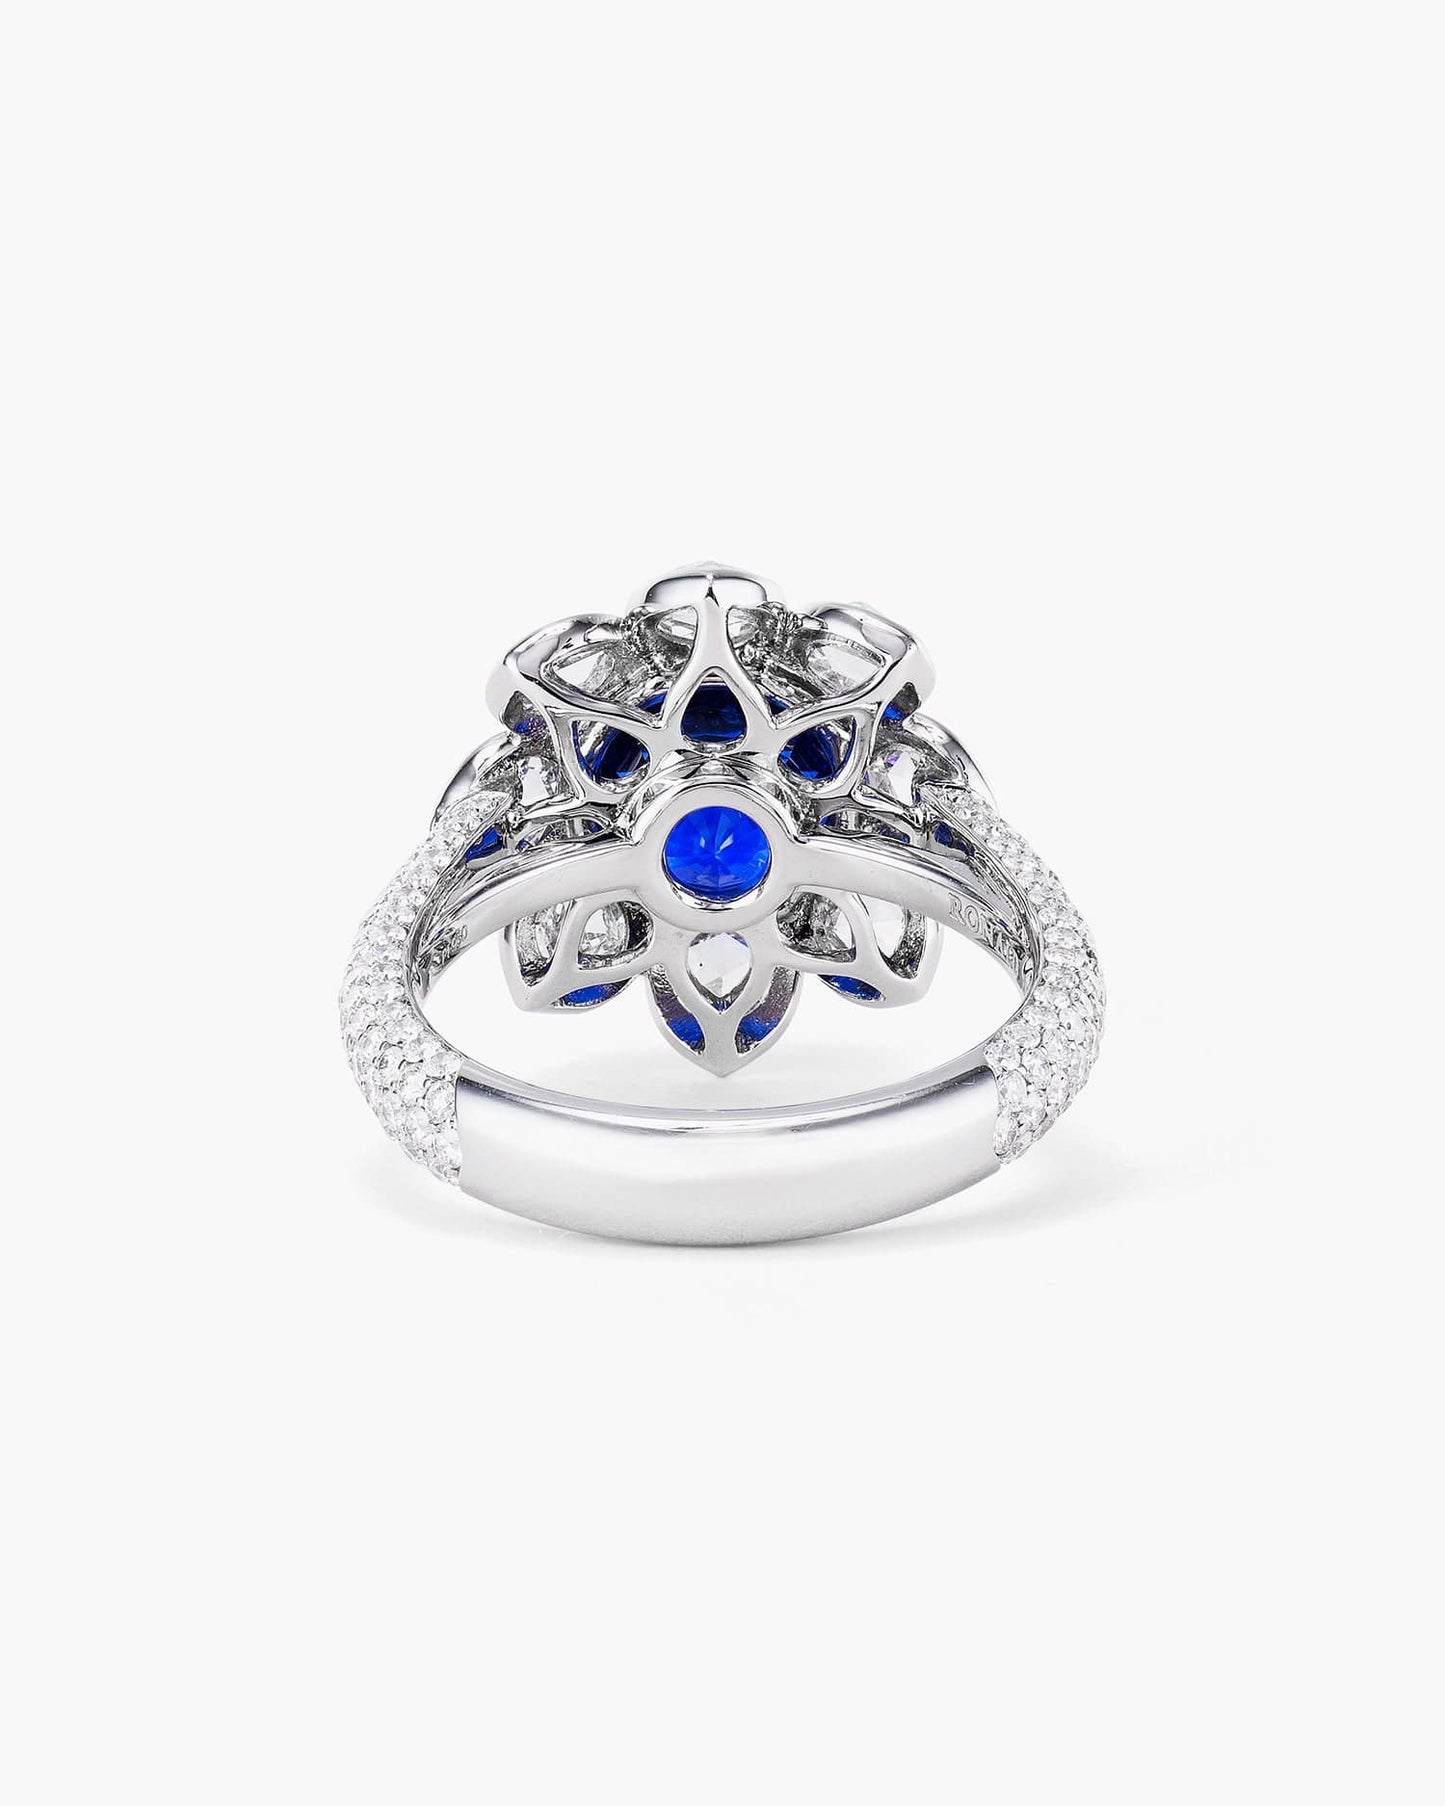 4.00 carat Round Cut Ceylon Sapphire and Diamond Ring